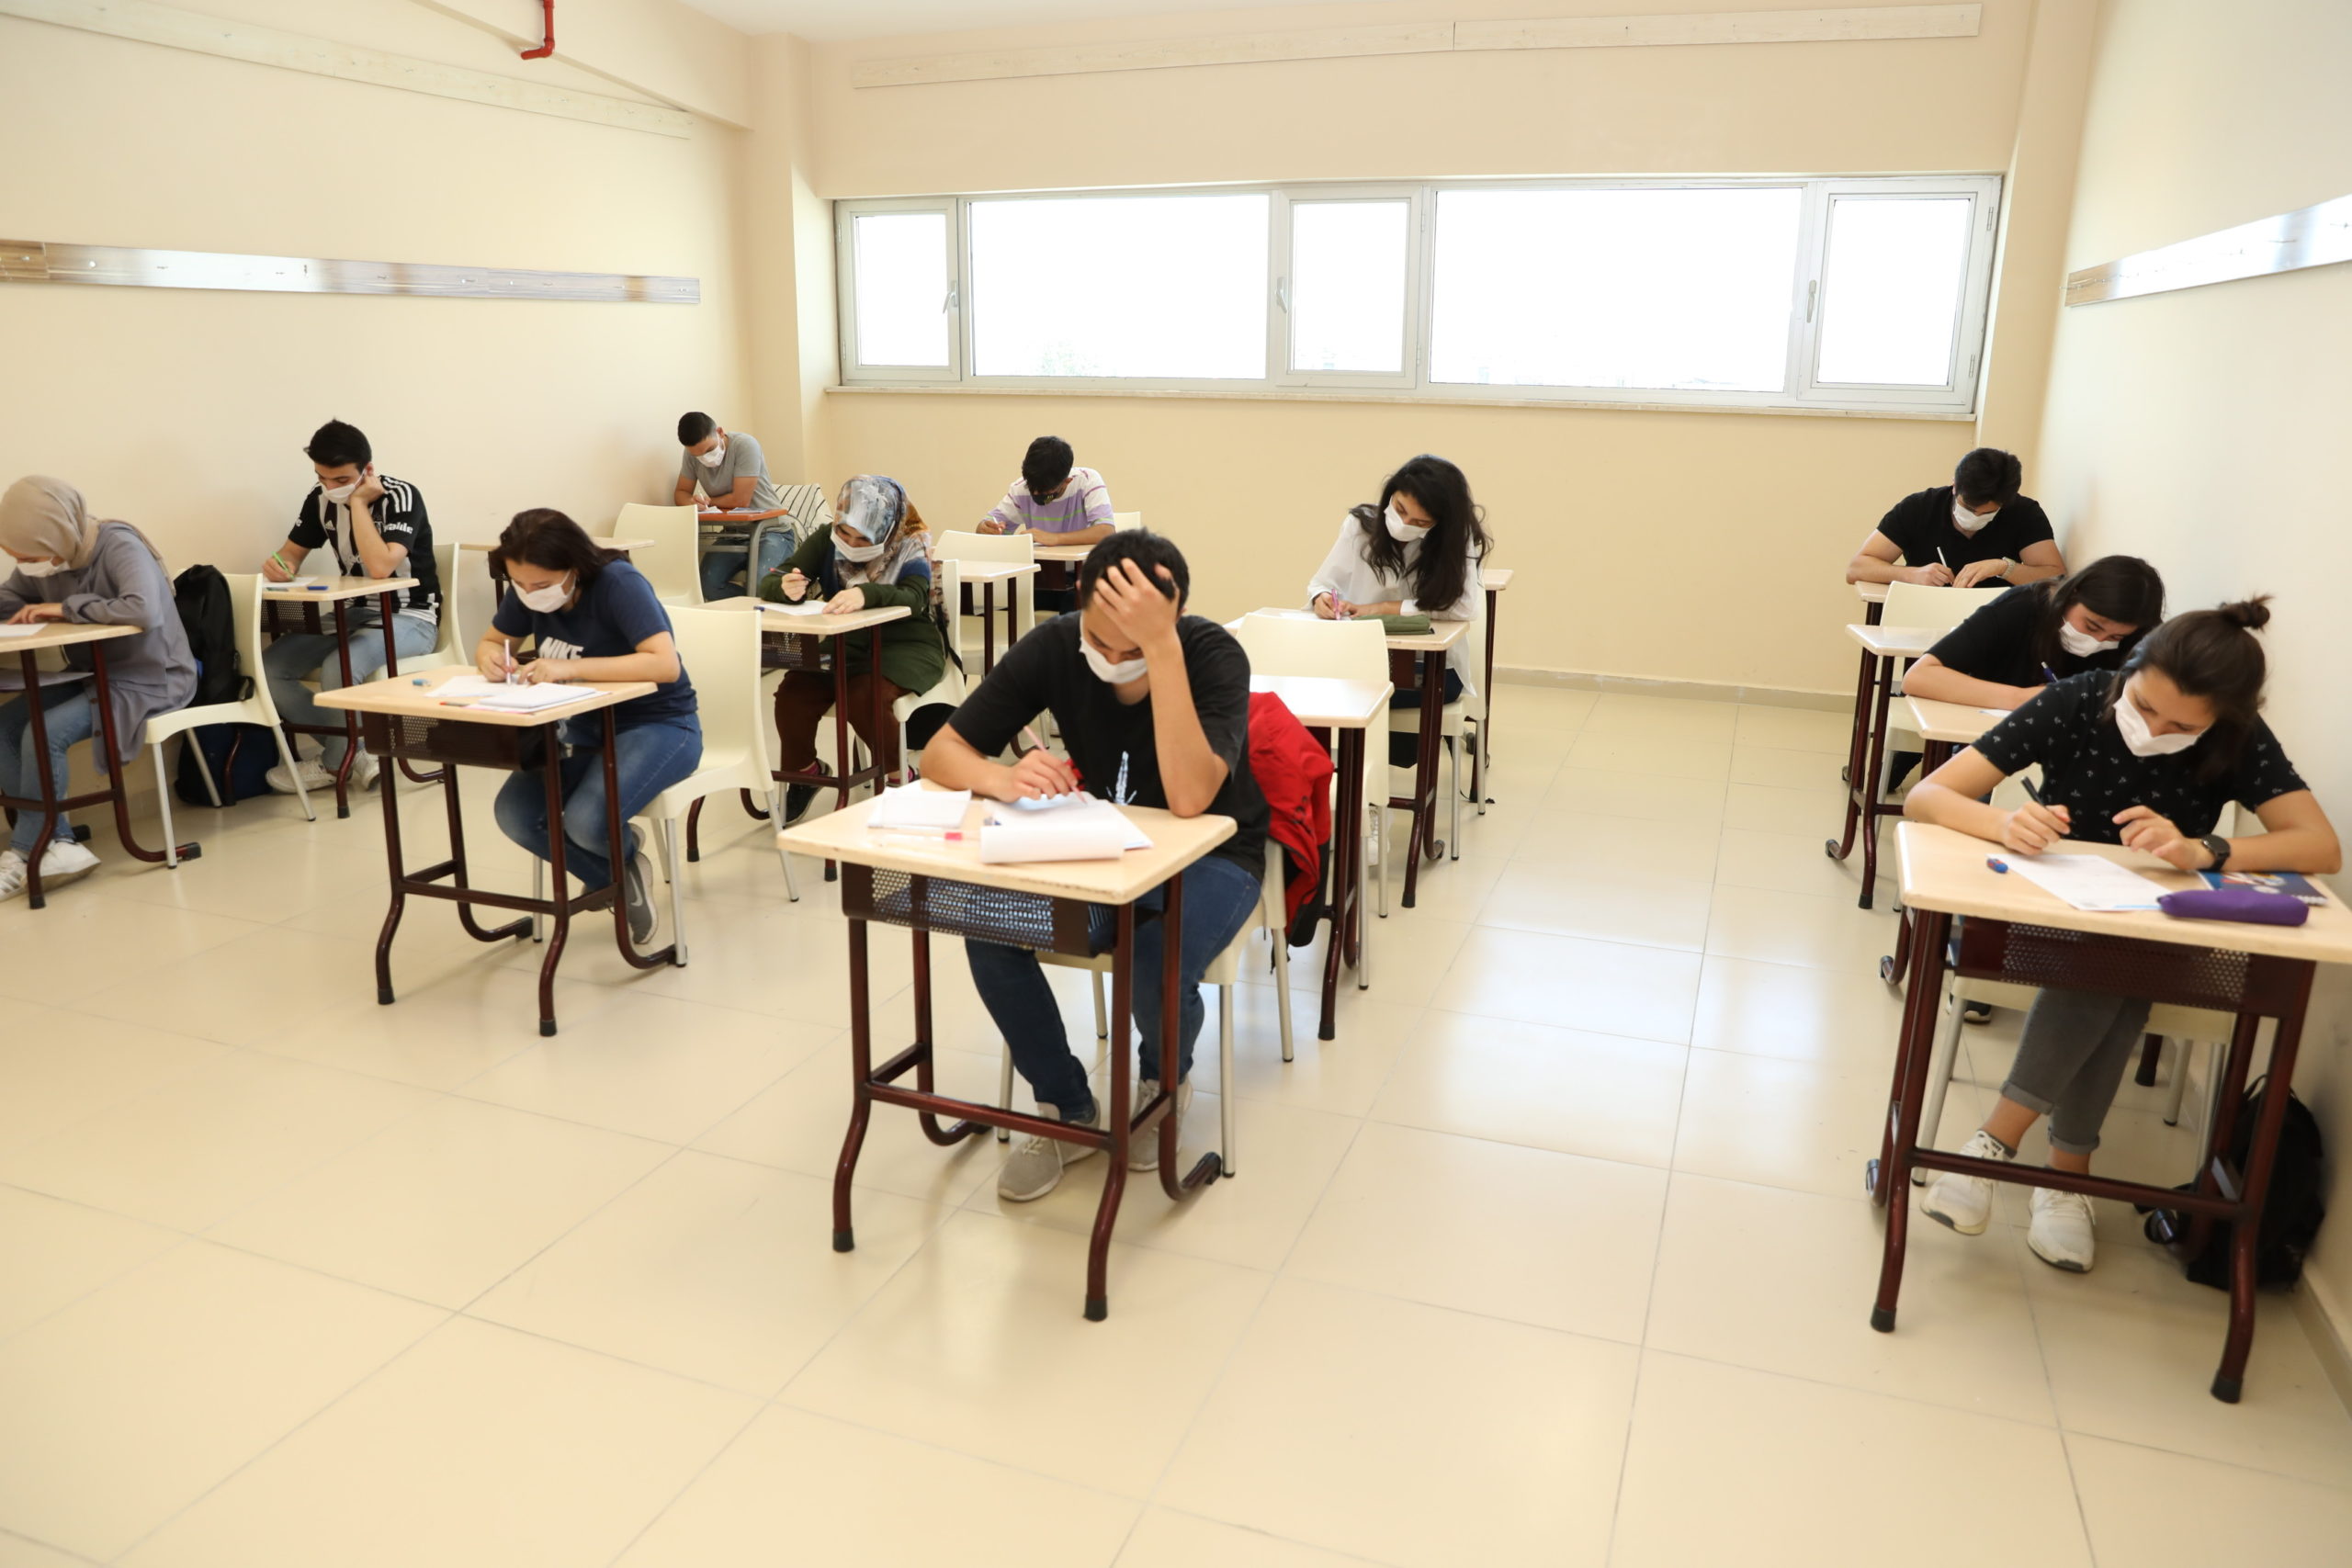  Bursa’da Üniversiteye Hazırlanan Öğrencilere Deneme Sınavı Yapılıyor